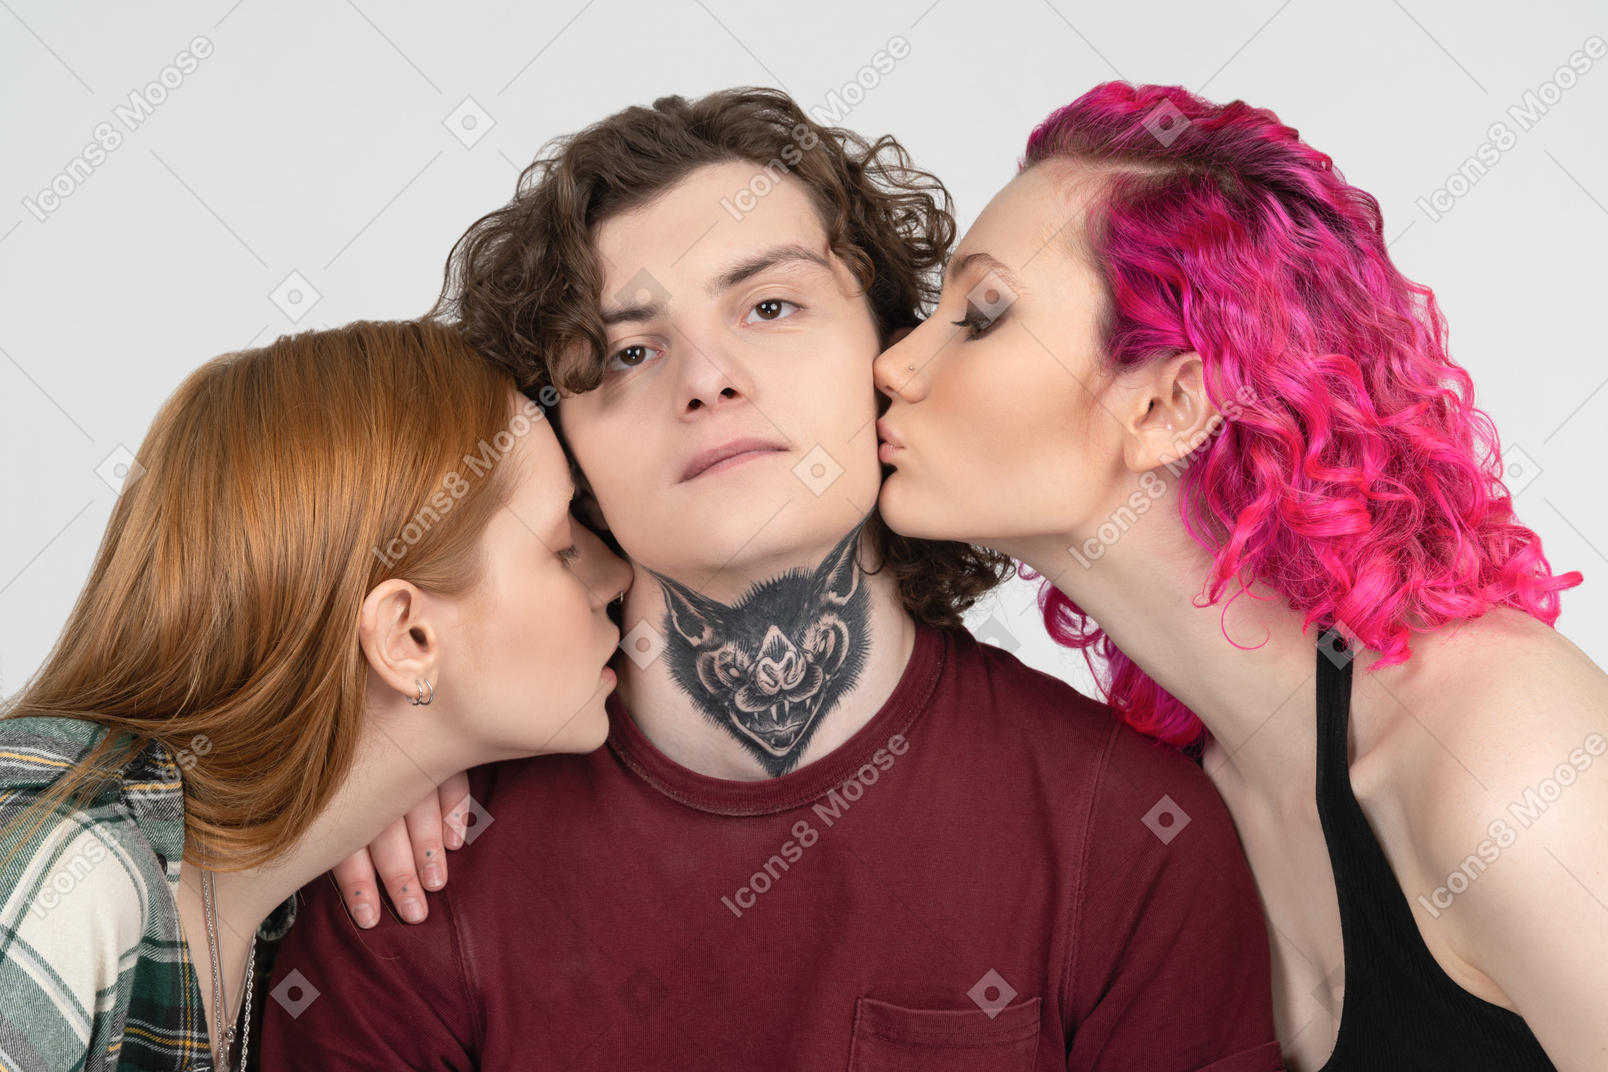 Chico con tatuaje siendo besado por dos chicas adolescentes